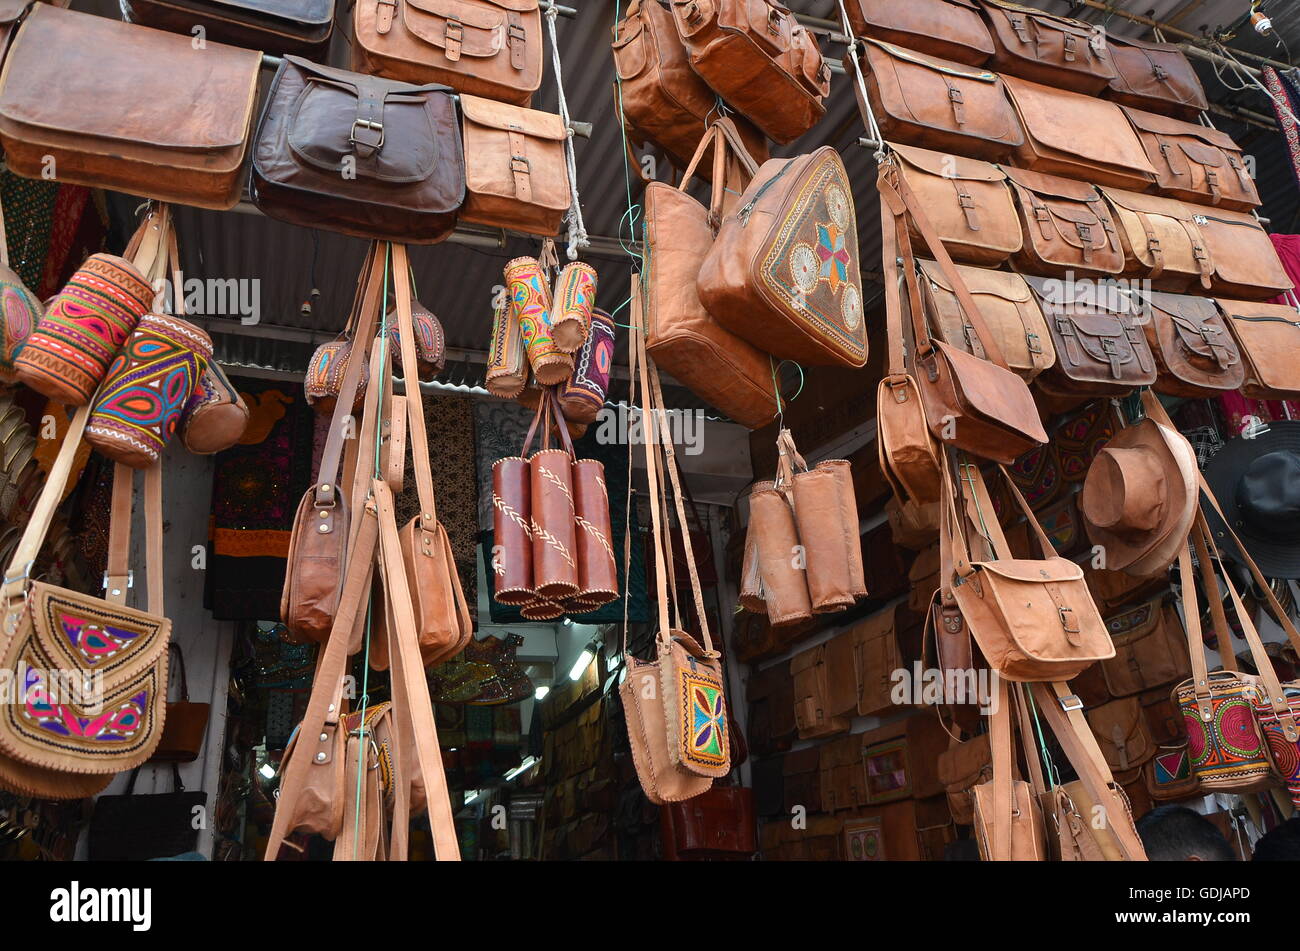 Ein Geschäft in Pushkar Fair, Indien, Verkauf Ledertaschen, Taschen,  Beutel, Geldbörsen und verschiedene dekorative Lederartikel Stockfotografie  - Alamy